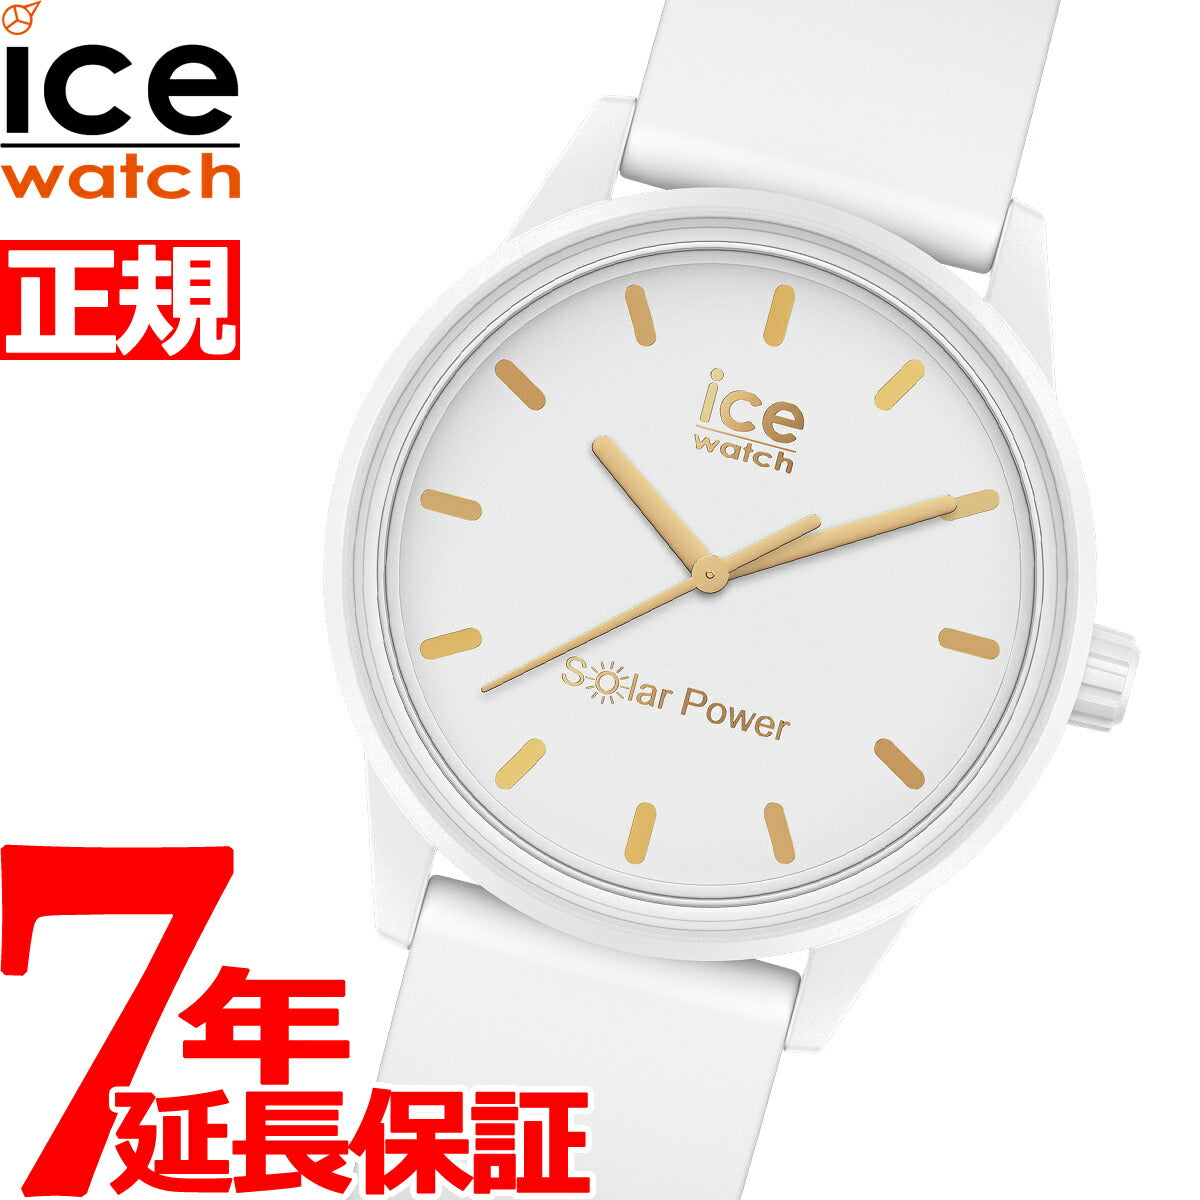 アイスウォッチ ICE-WATCH 腕時計 メンズ レディース アイスソーラーパワー ICE solar power スモール ホワイトゴールド 018474